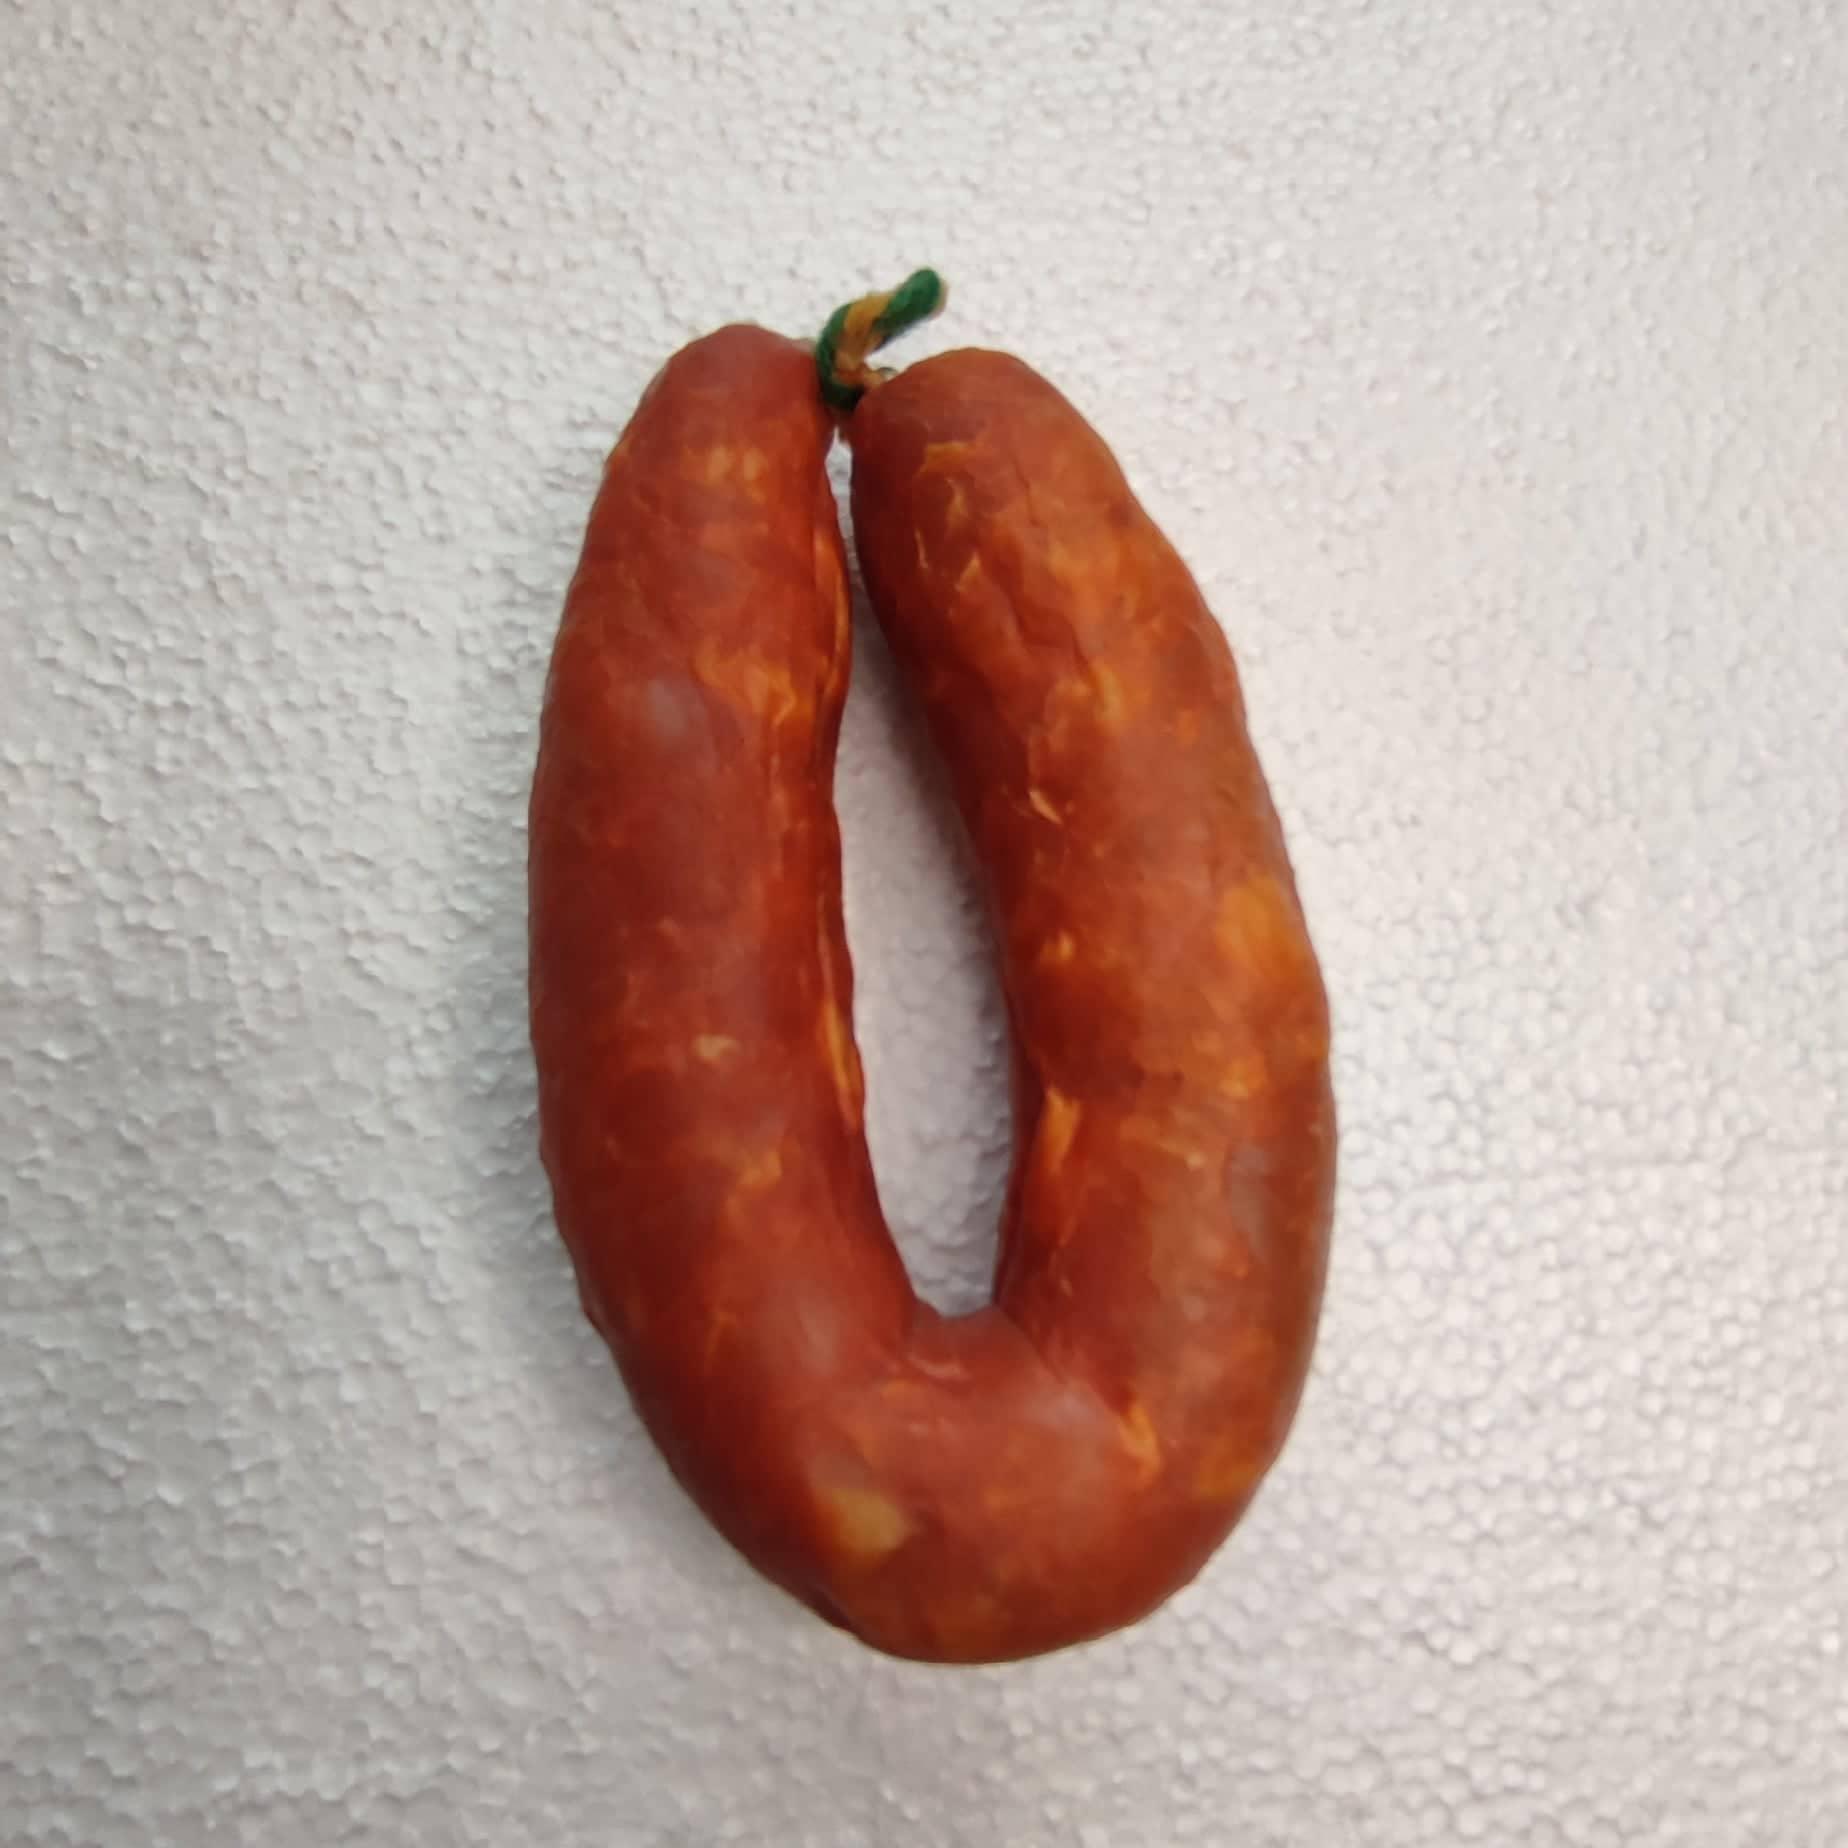 Kit découverte Chorizo grillé Chouriço assado